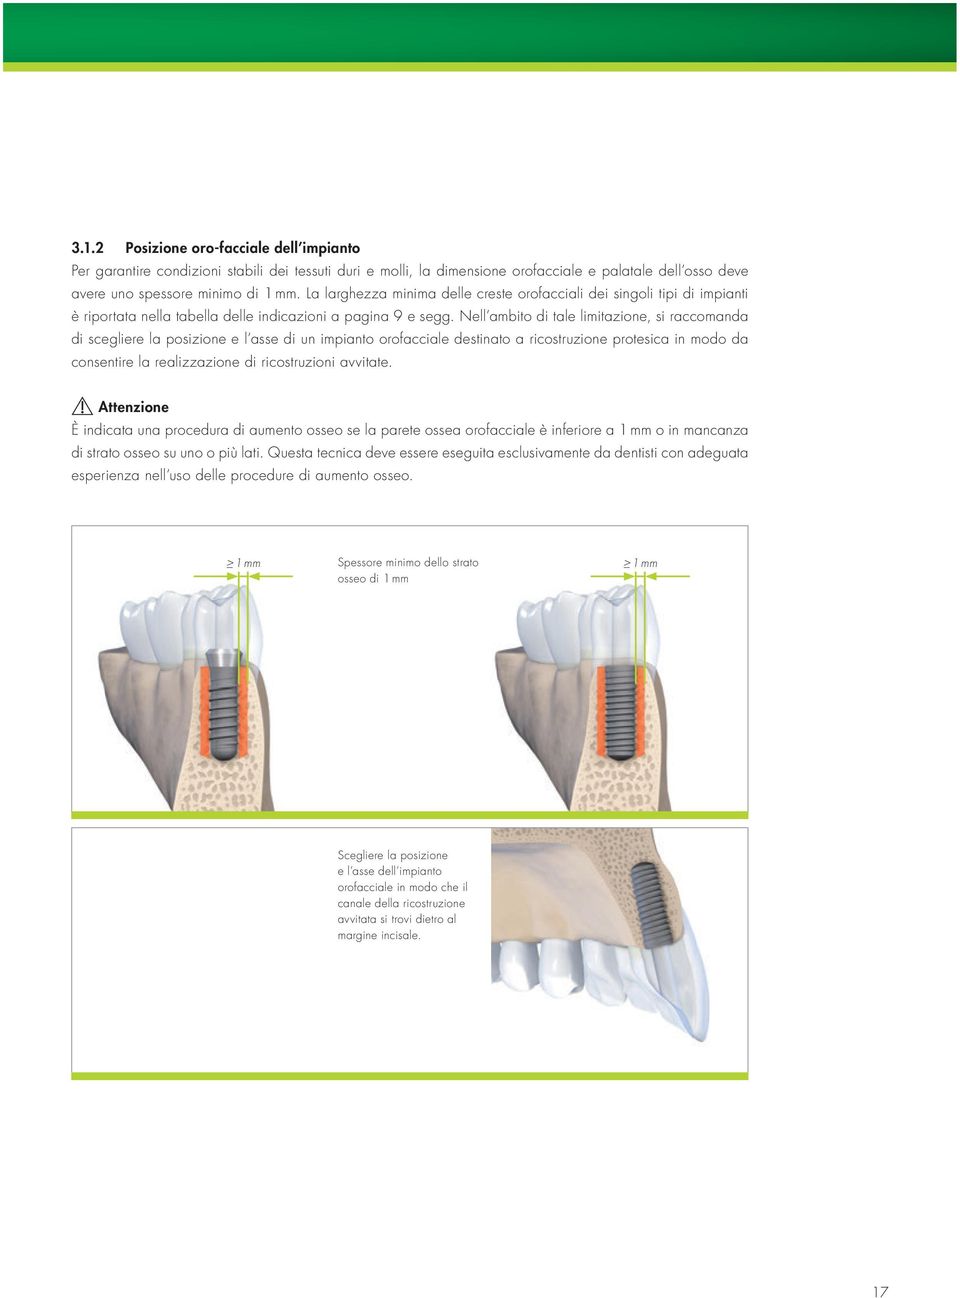 Nell ambito di tale limitazione, si raccomanda di scegliere la posizione e l asse di un impianto orofacciale destinato a ricostruzione protesica in modo da consentire la realizzazione di